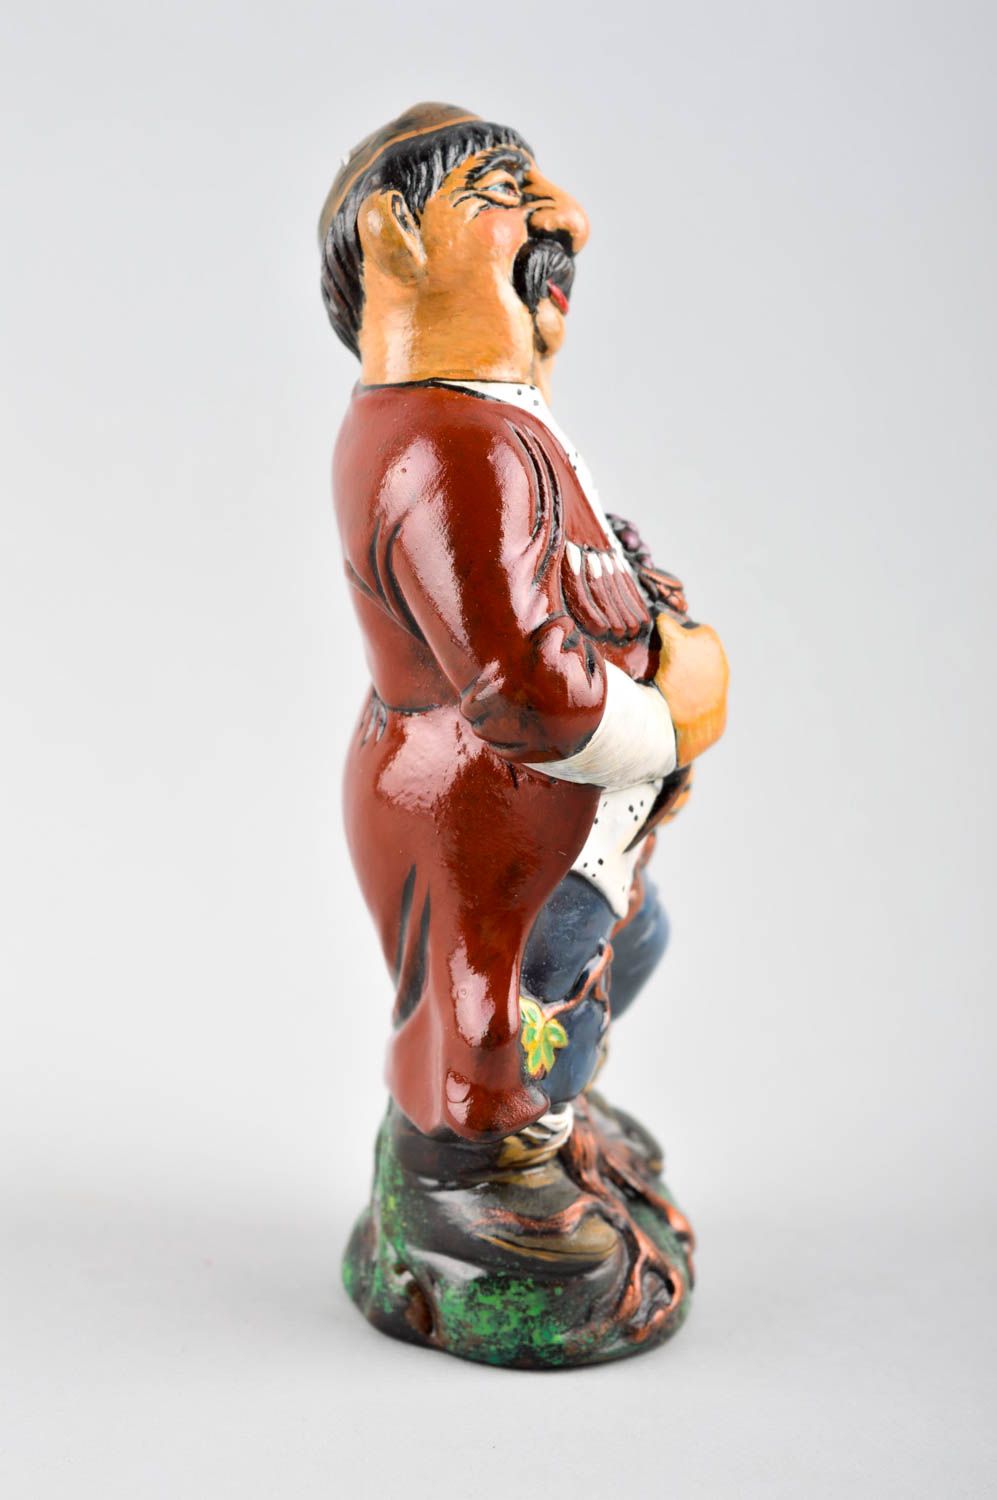 Статуэтка ручной работы глиняная статуэтка в виде дедушки этно фигурки людей фото 3